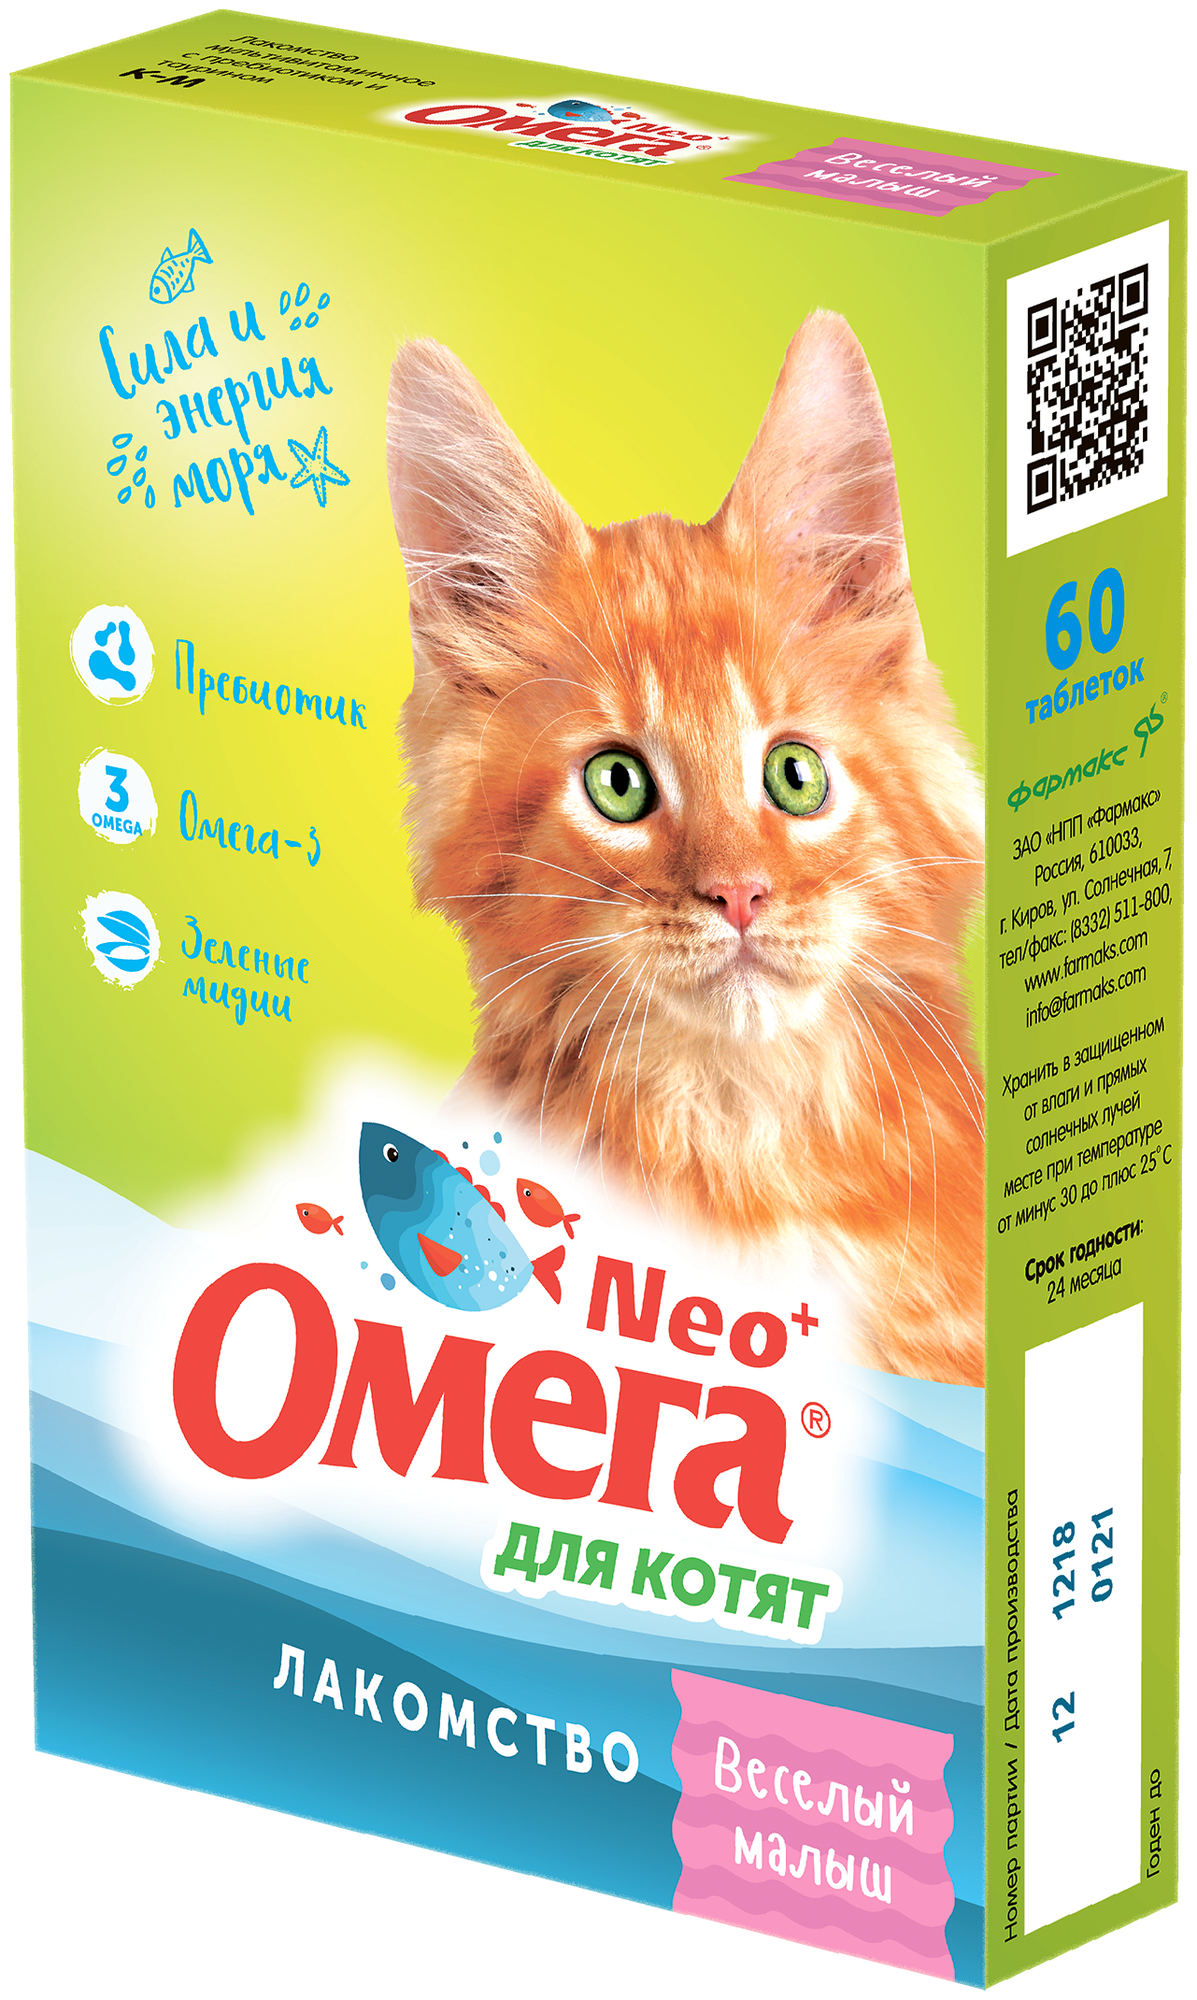 Витаминное лакомство Омега Neo+ для котят 60т